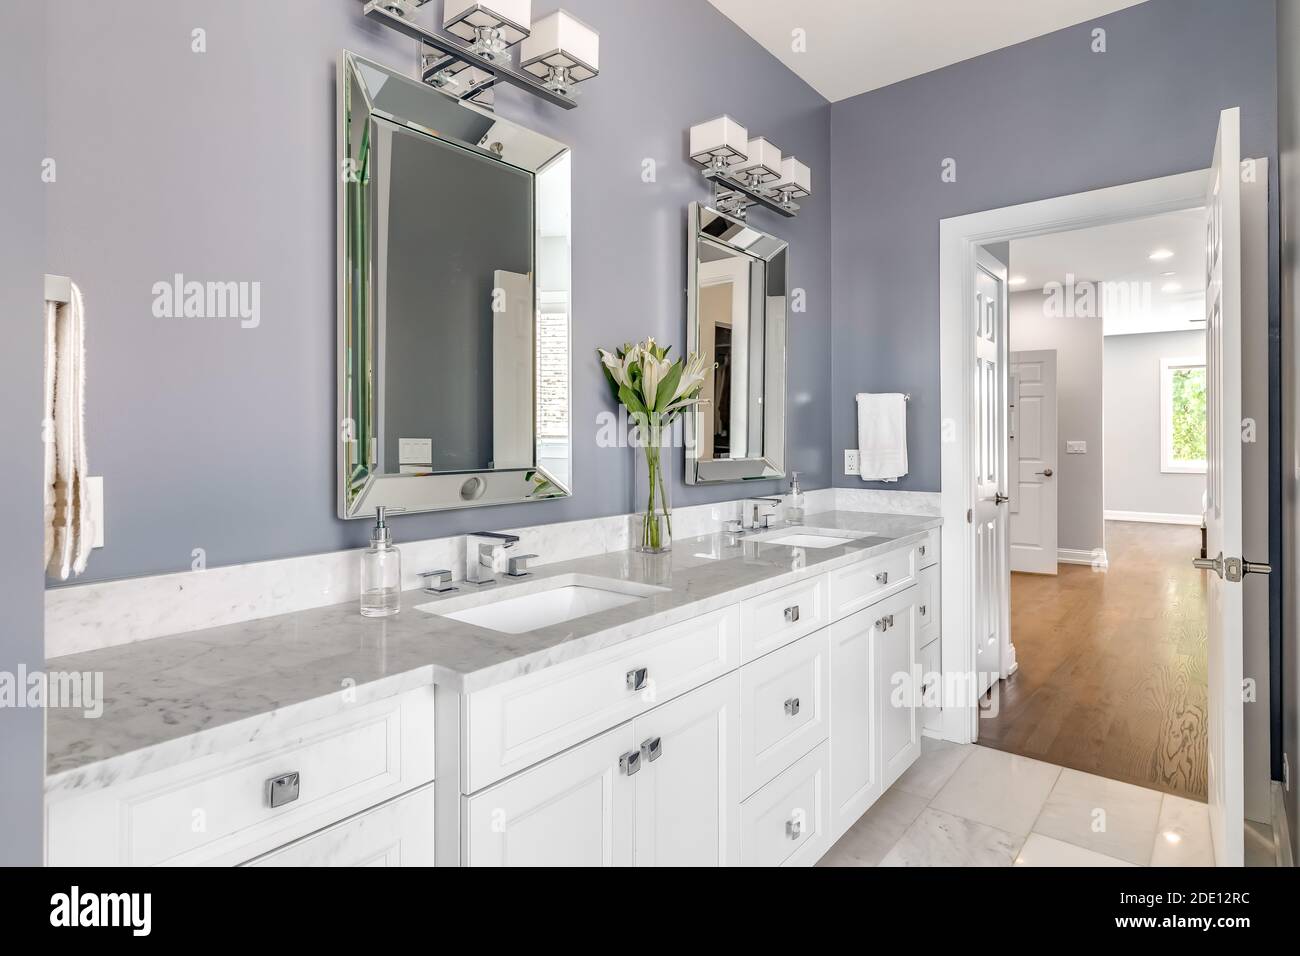 Ein luxuriöses Badezimmer mit lila Wänden, einem weißen Schrank und Arbeitsplatten, und Chrom Hardware Blick in Richtung der primären Schlafzimmer. Stockfoto